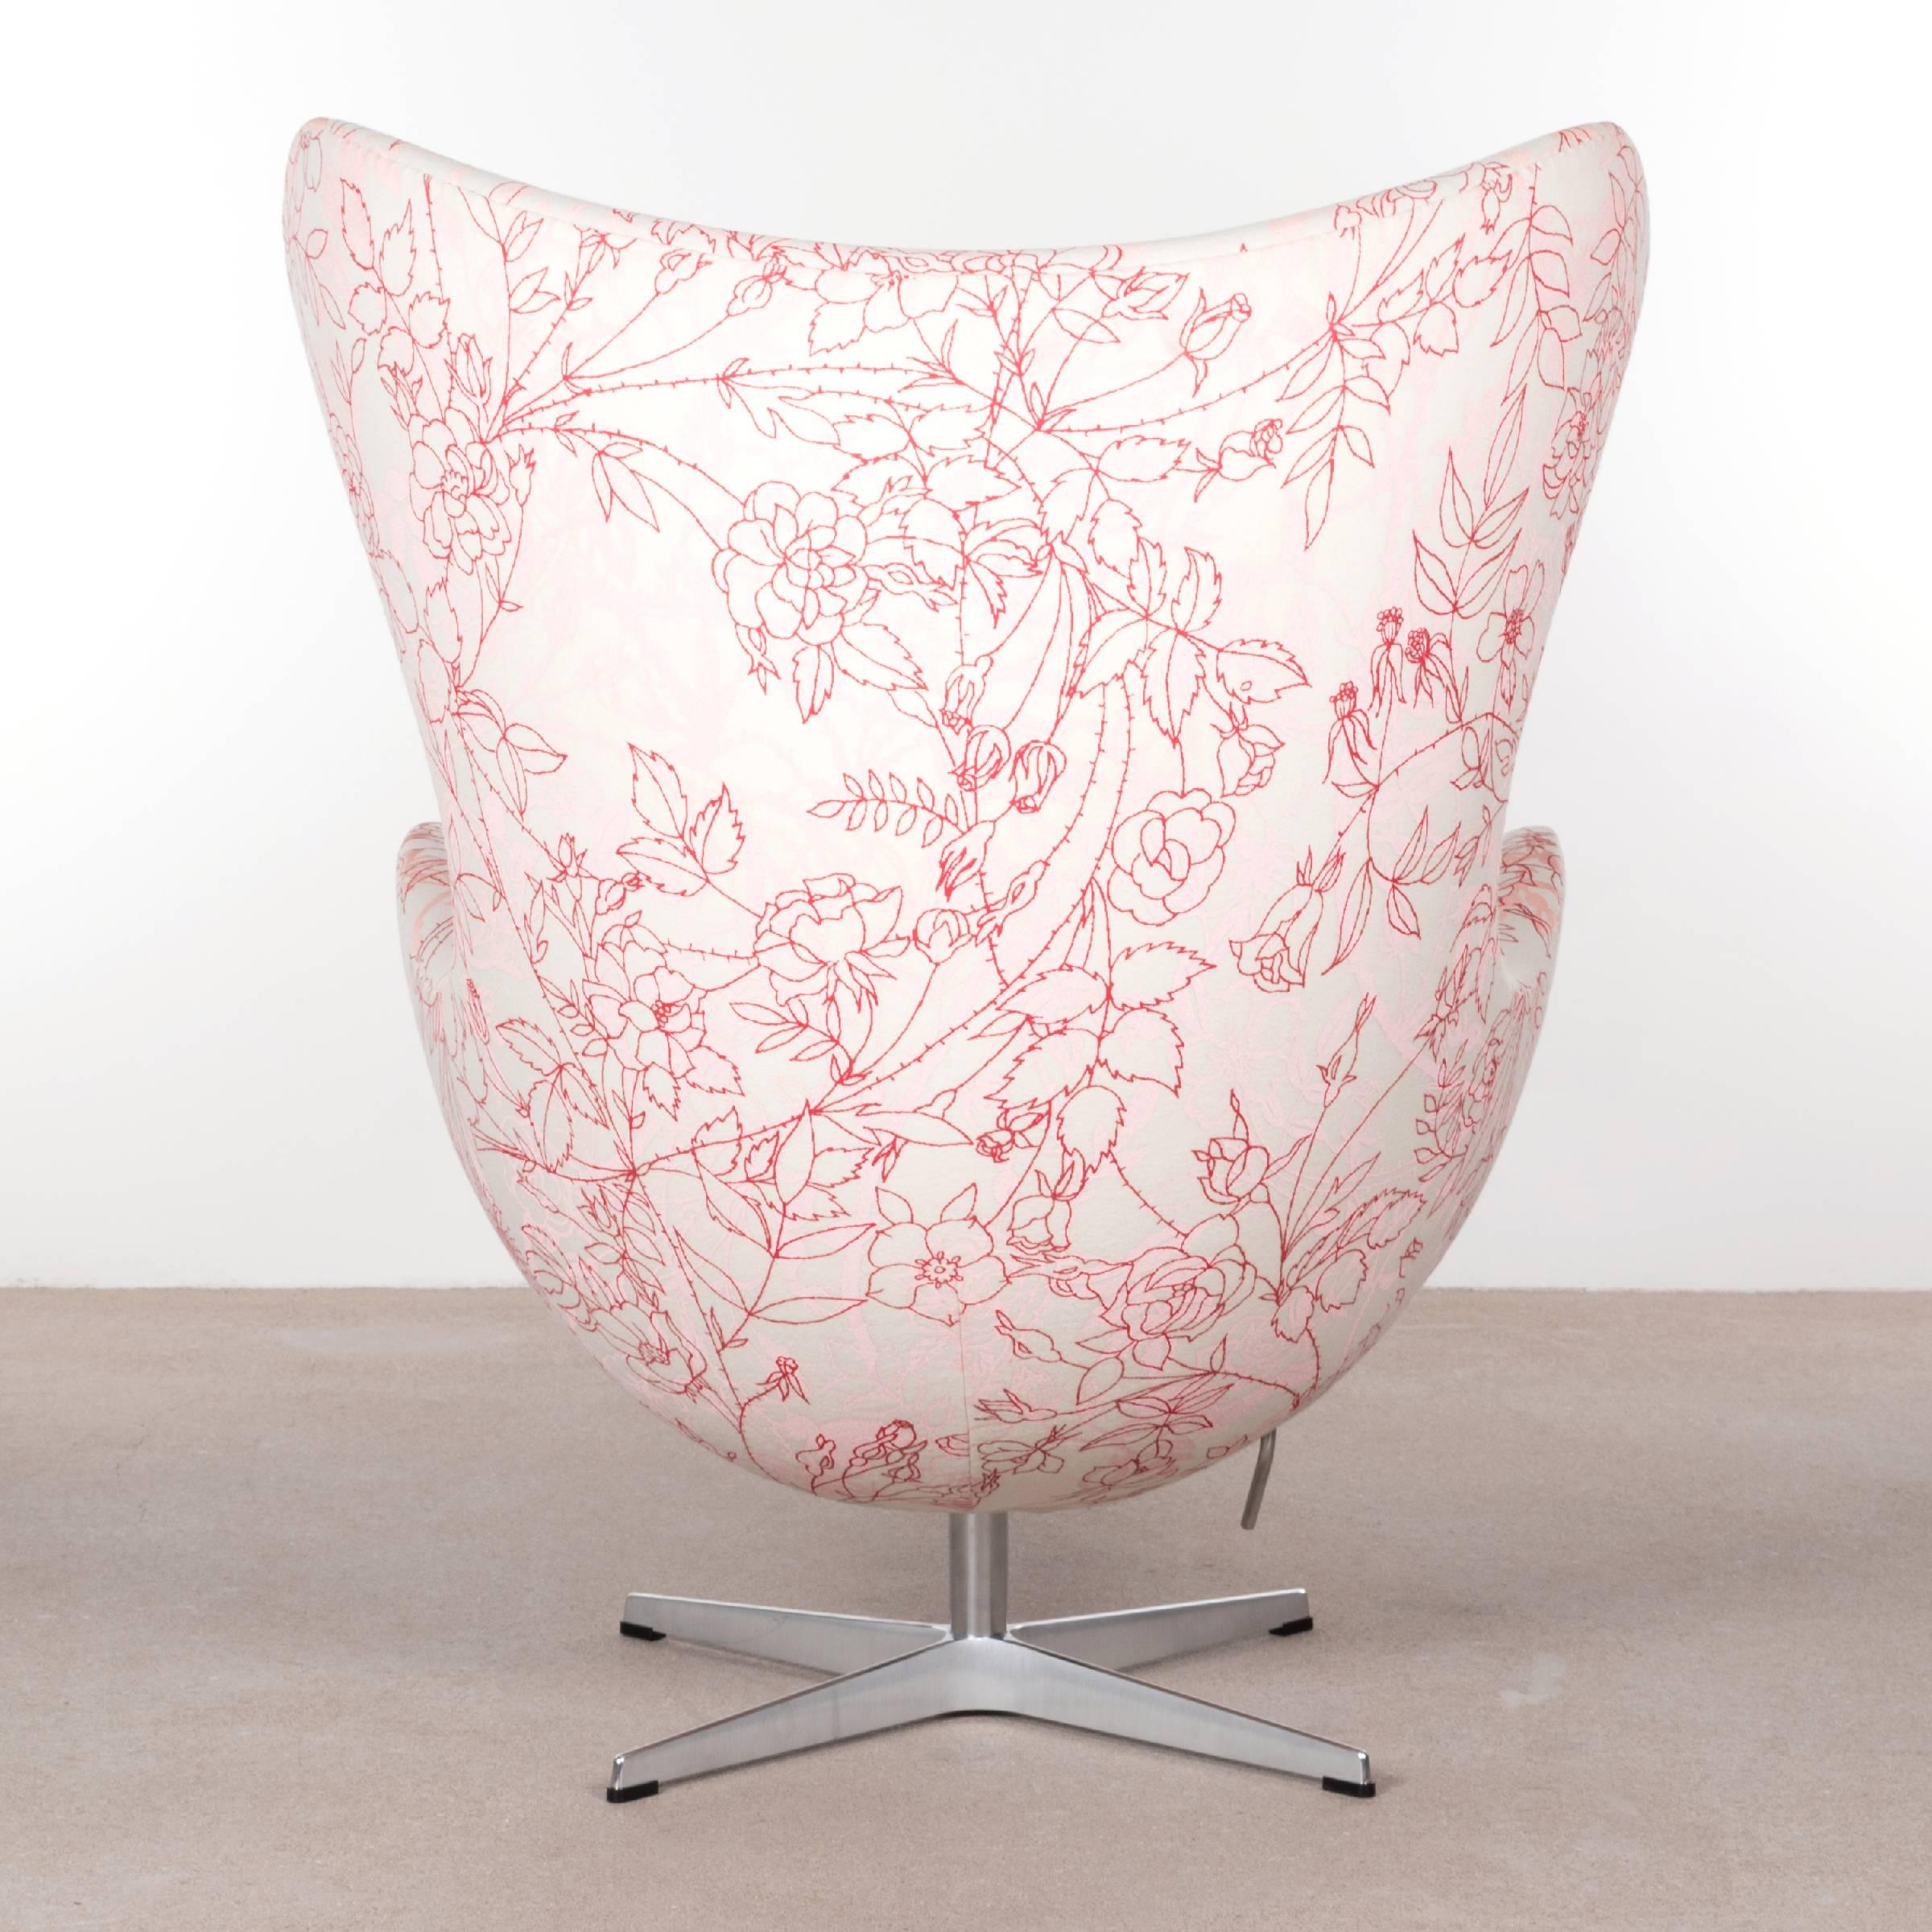 Scandinavian Modern Arne Jacobsen Egg Chair in Elegent Fabric with Rose Motifv for Fritz Hansen